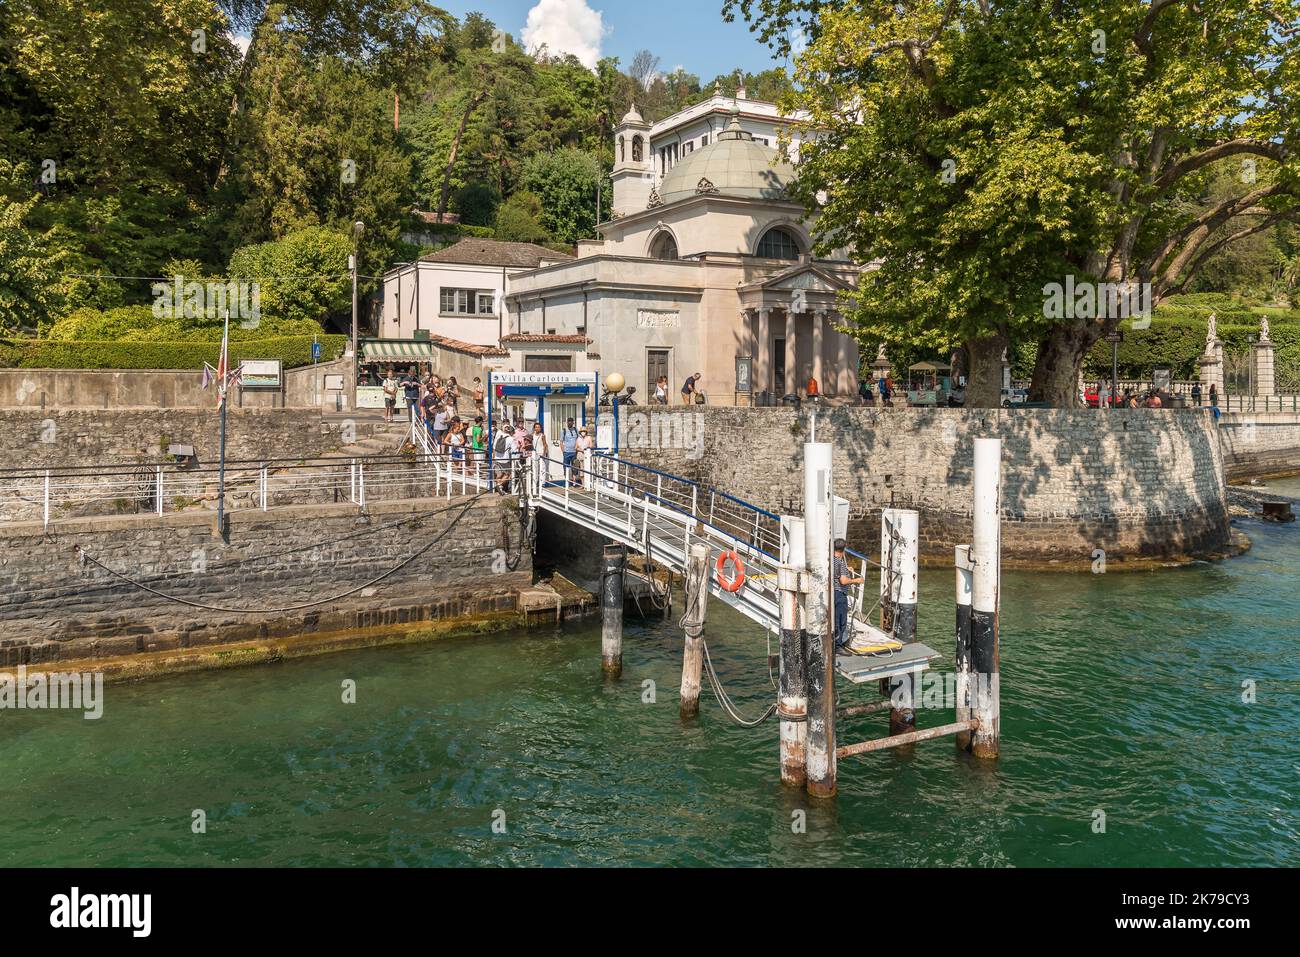 Tremezzina, Lombardie, Italie - 5 septembre 2022: La jetée de la villa Carlotta dans le village de Tremezzina avec les touristes attendent le ferry pour Banque D'Images